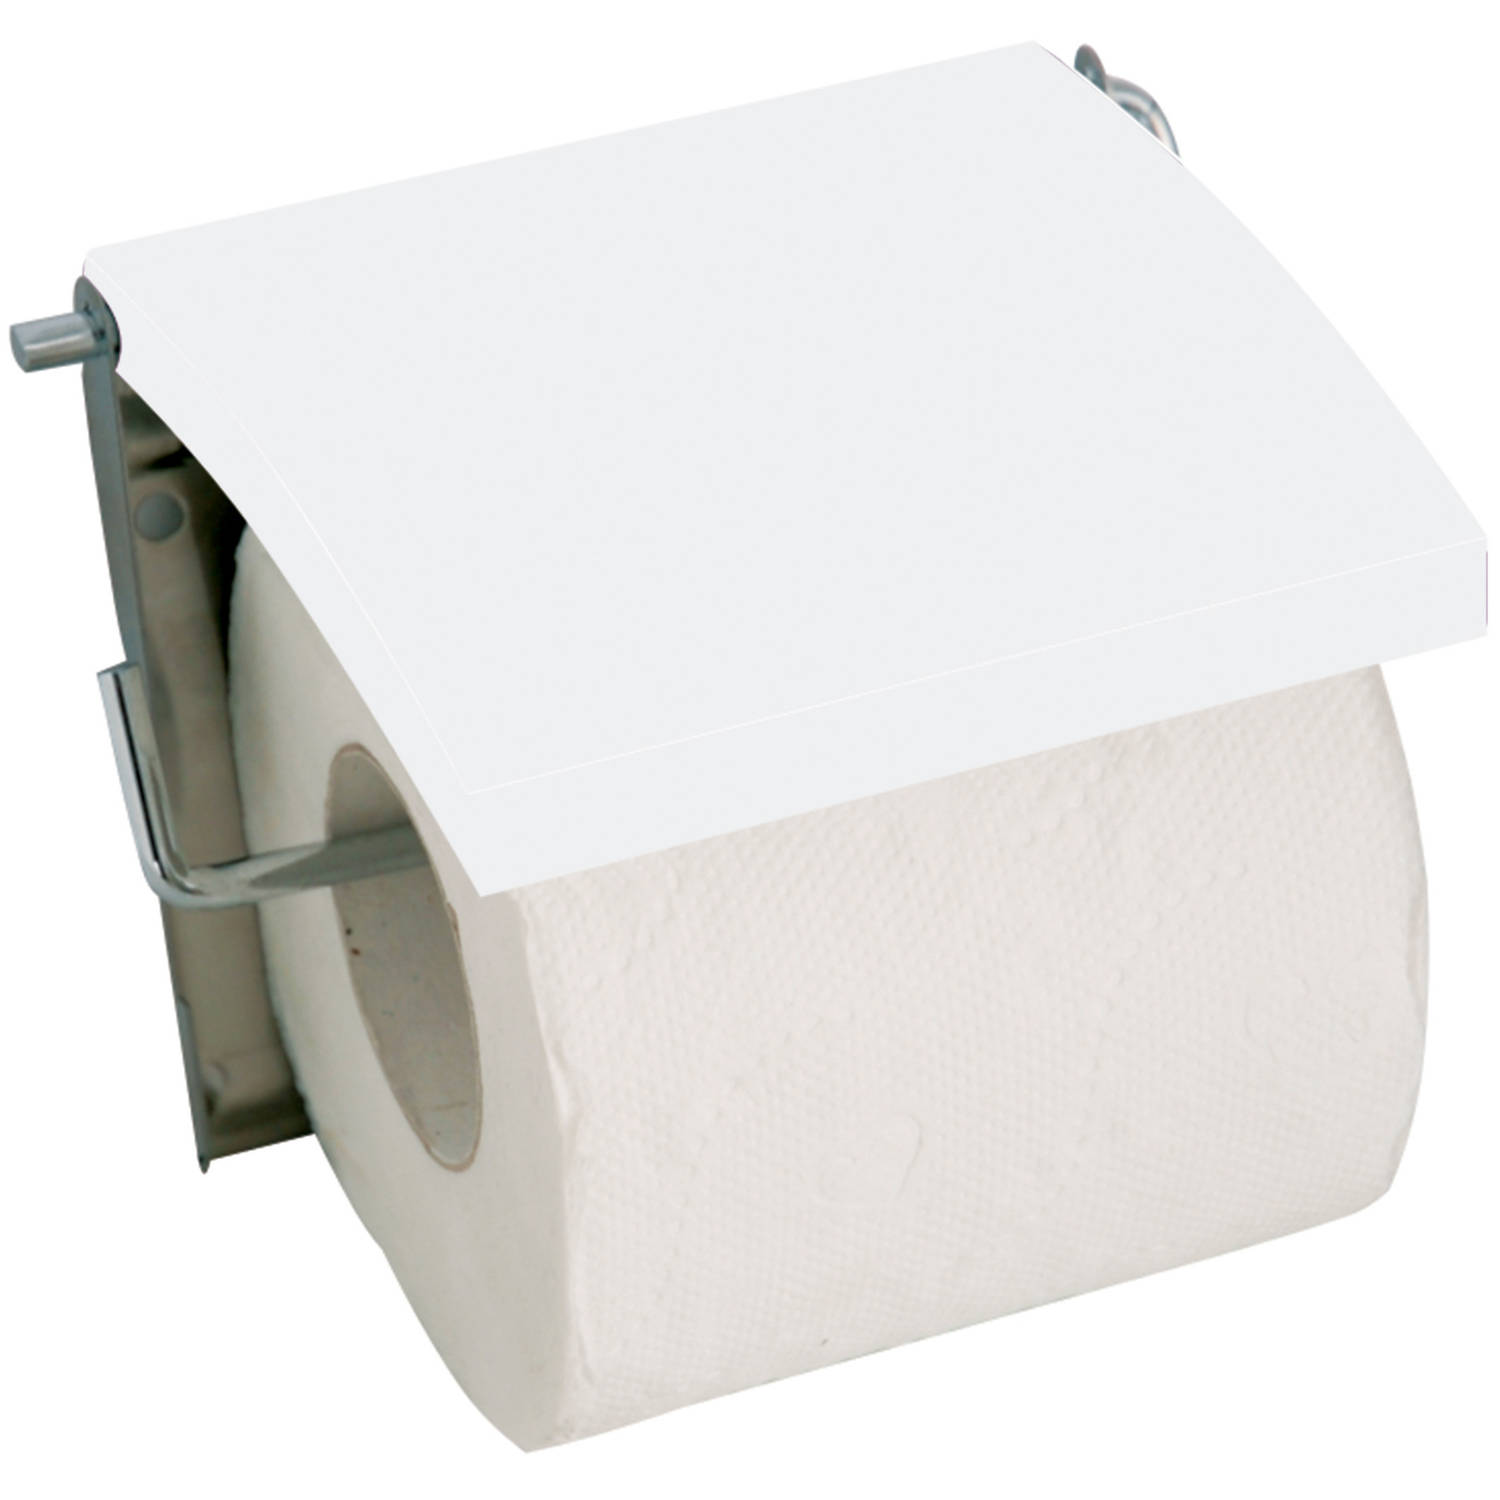 MSV Toiletrolhouder voor wand/muur - Metaal en MDF hout klepje - ivoor wit